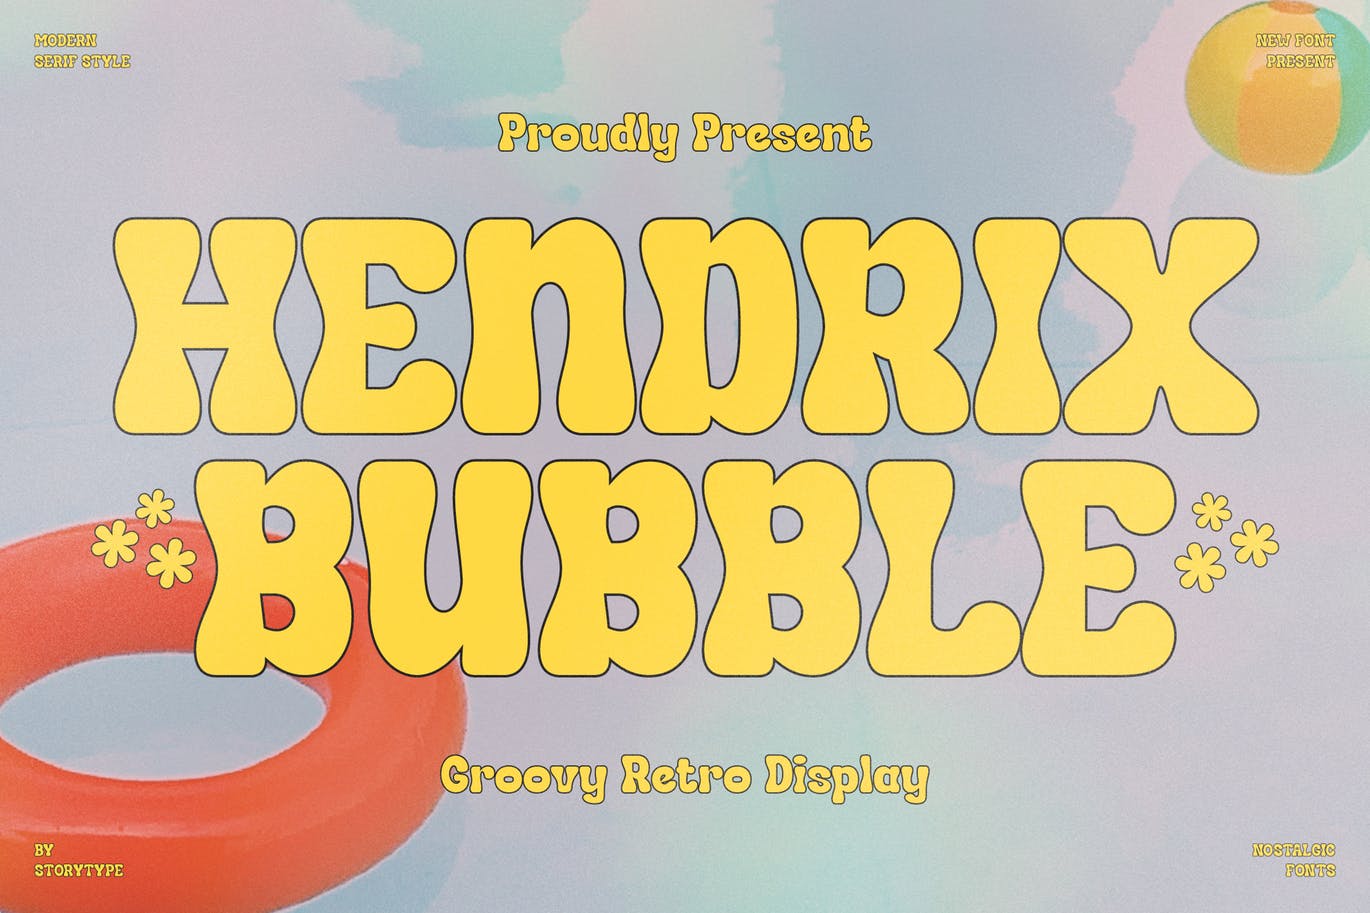 经典复古风格字体素材 Hendrix Bubble Groovy Retro Display 设计素材 第1张